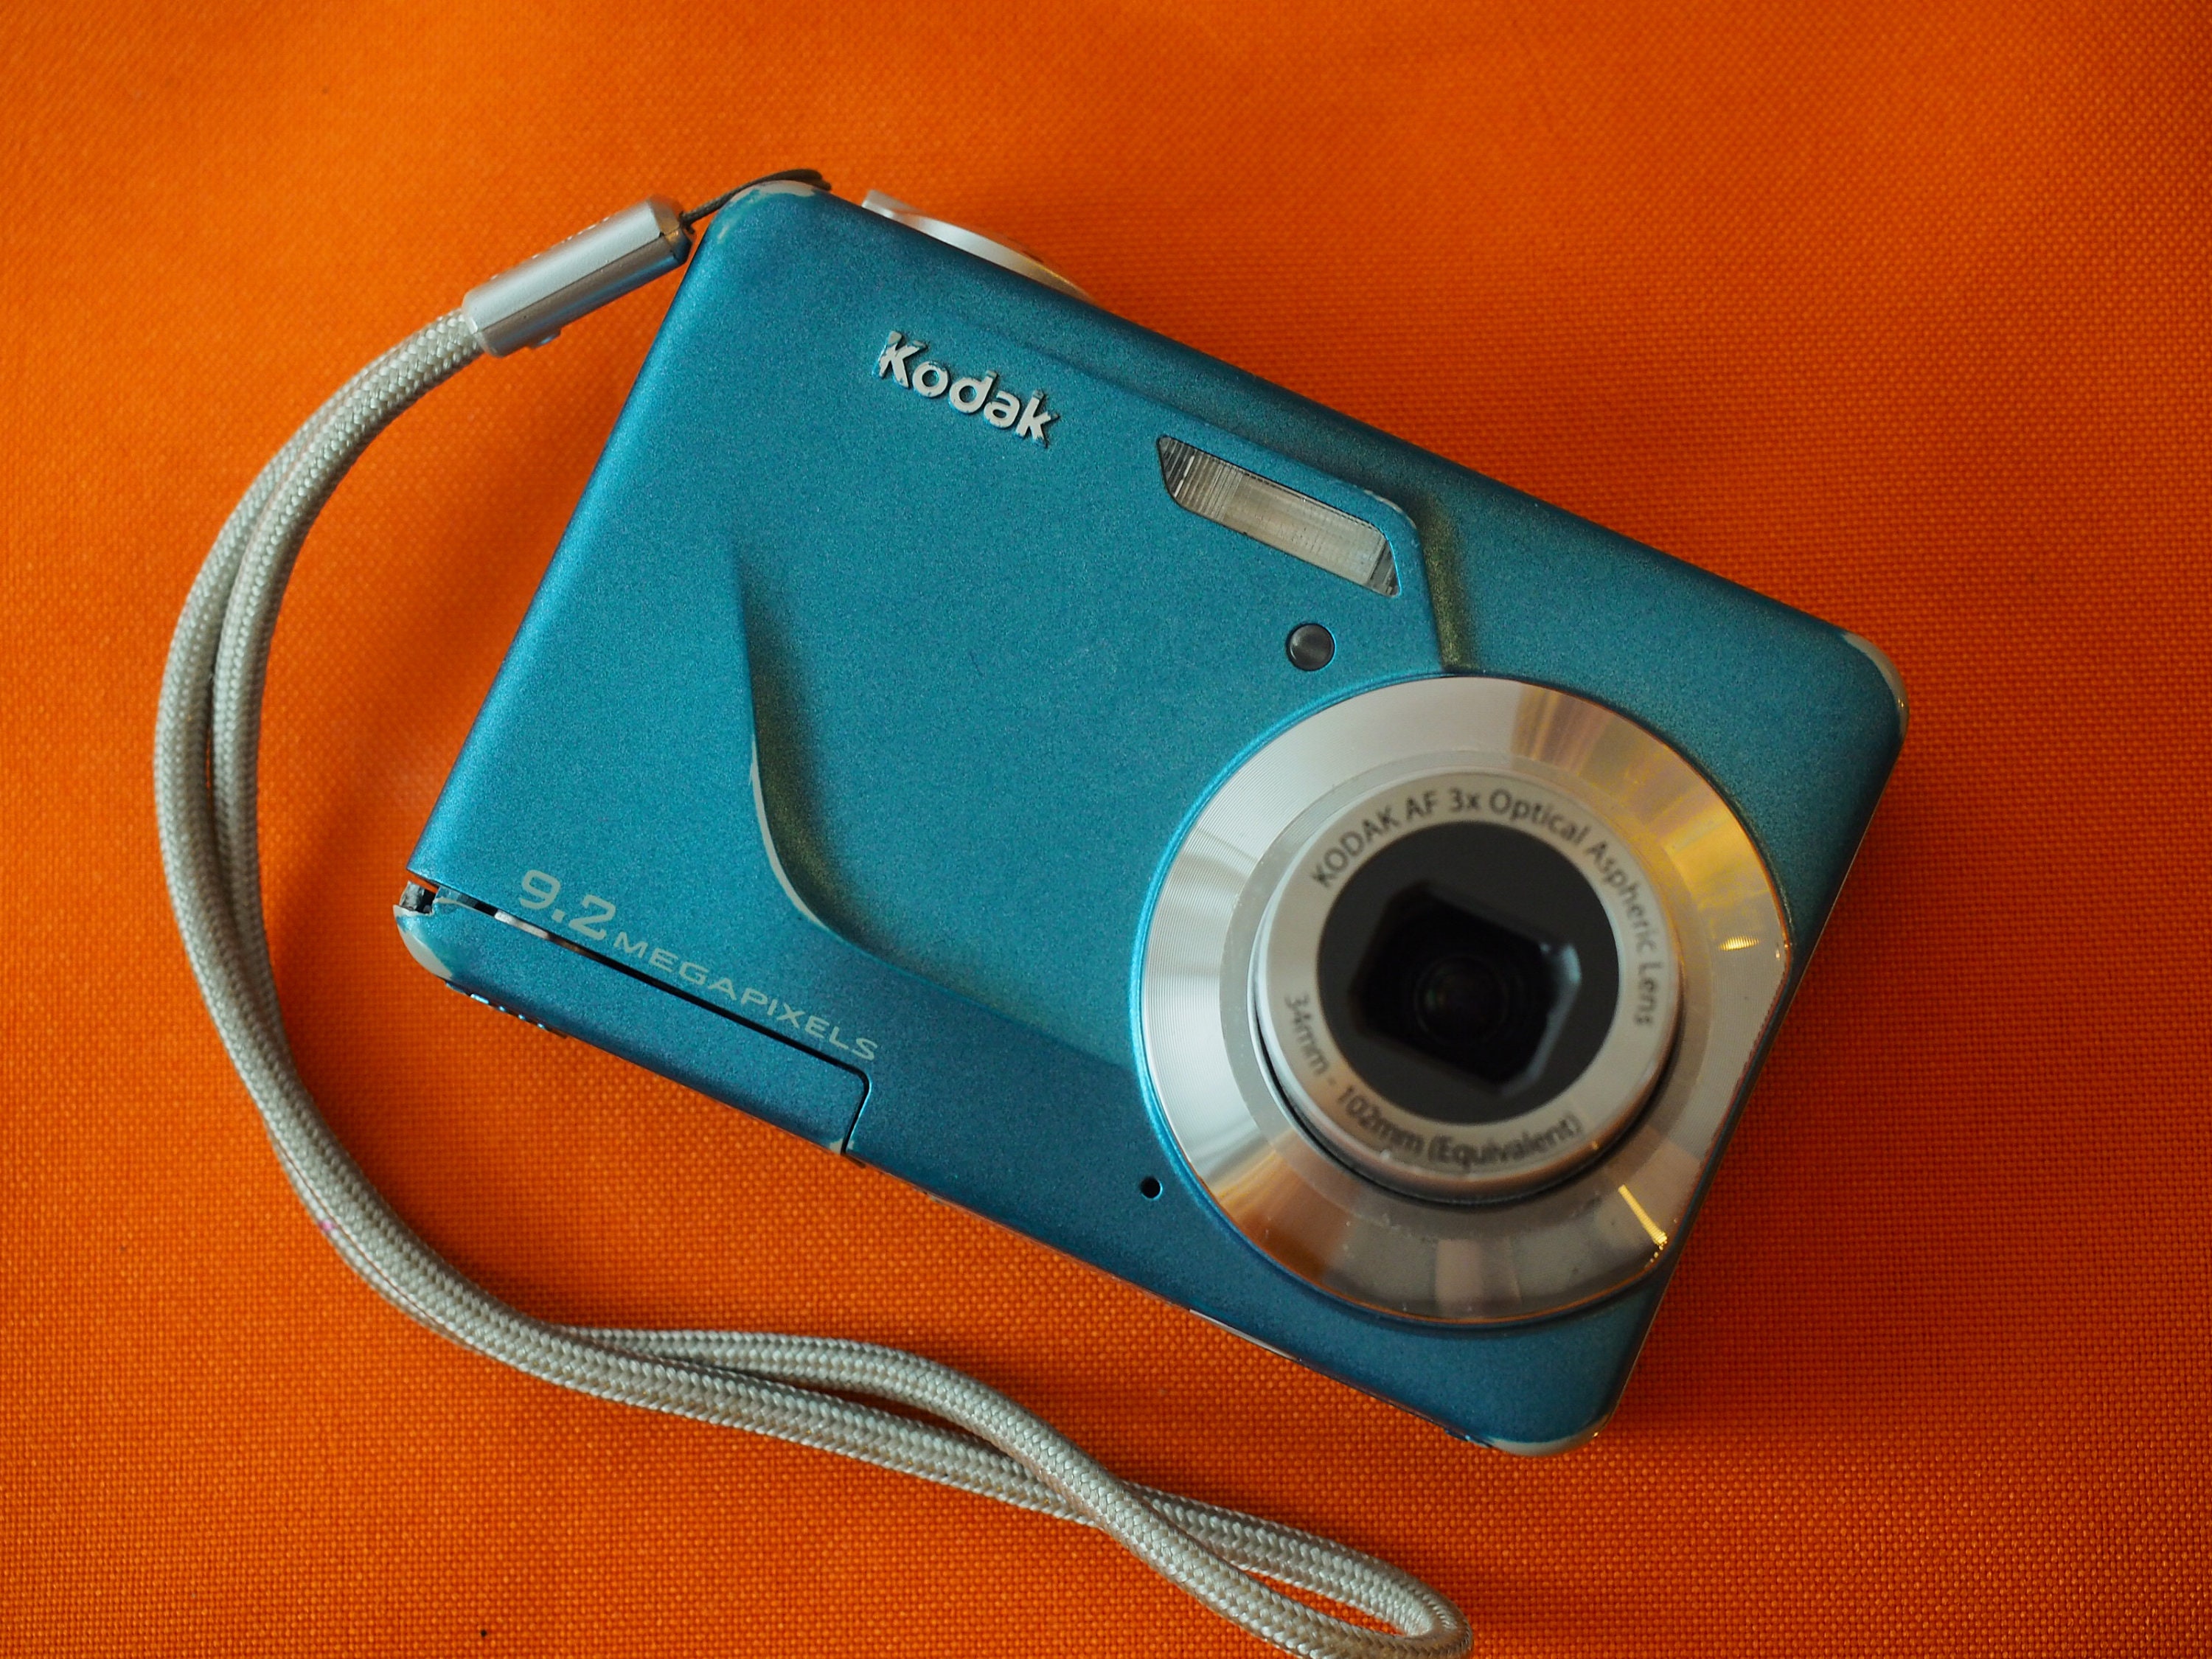 Kodak EasyShare C160 9.2MP Digital Camera - Teal for sale online